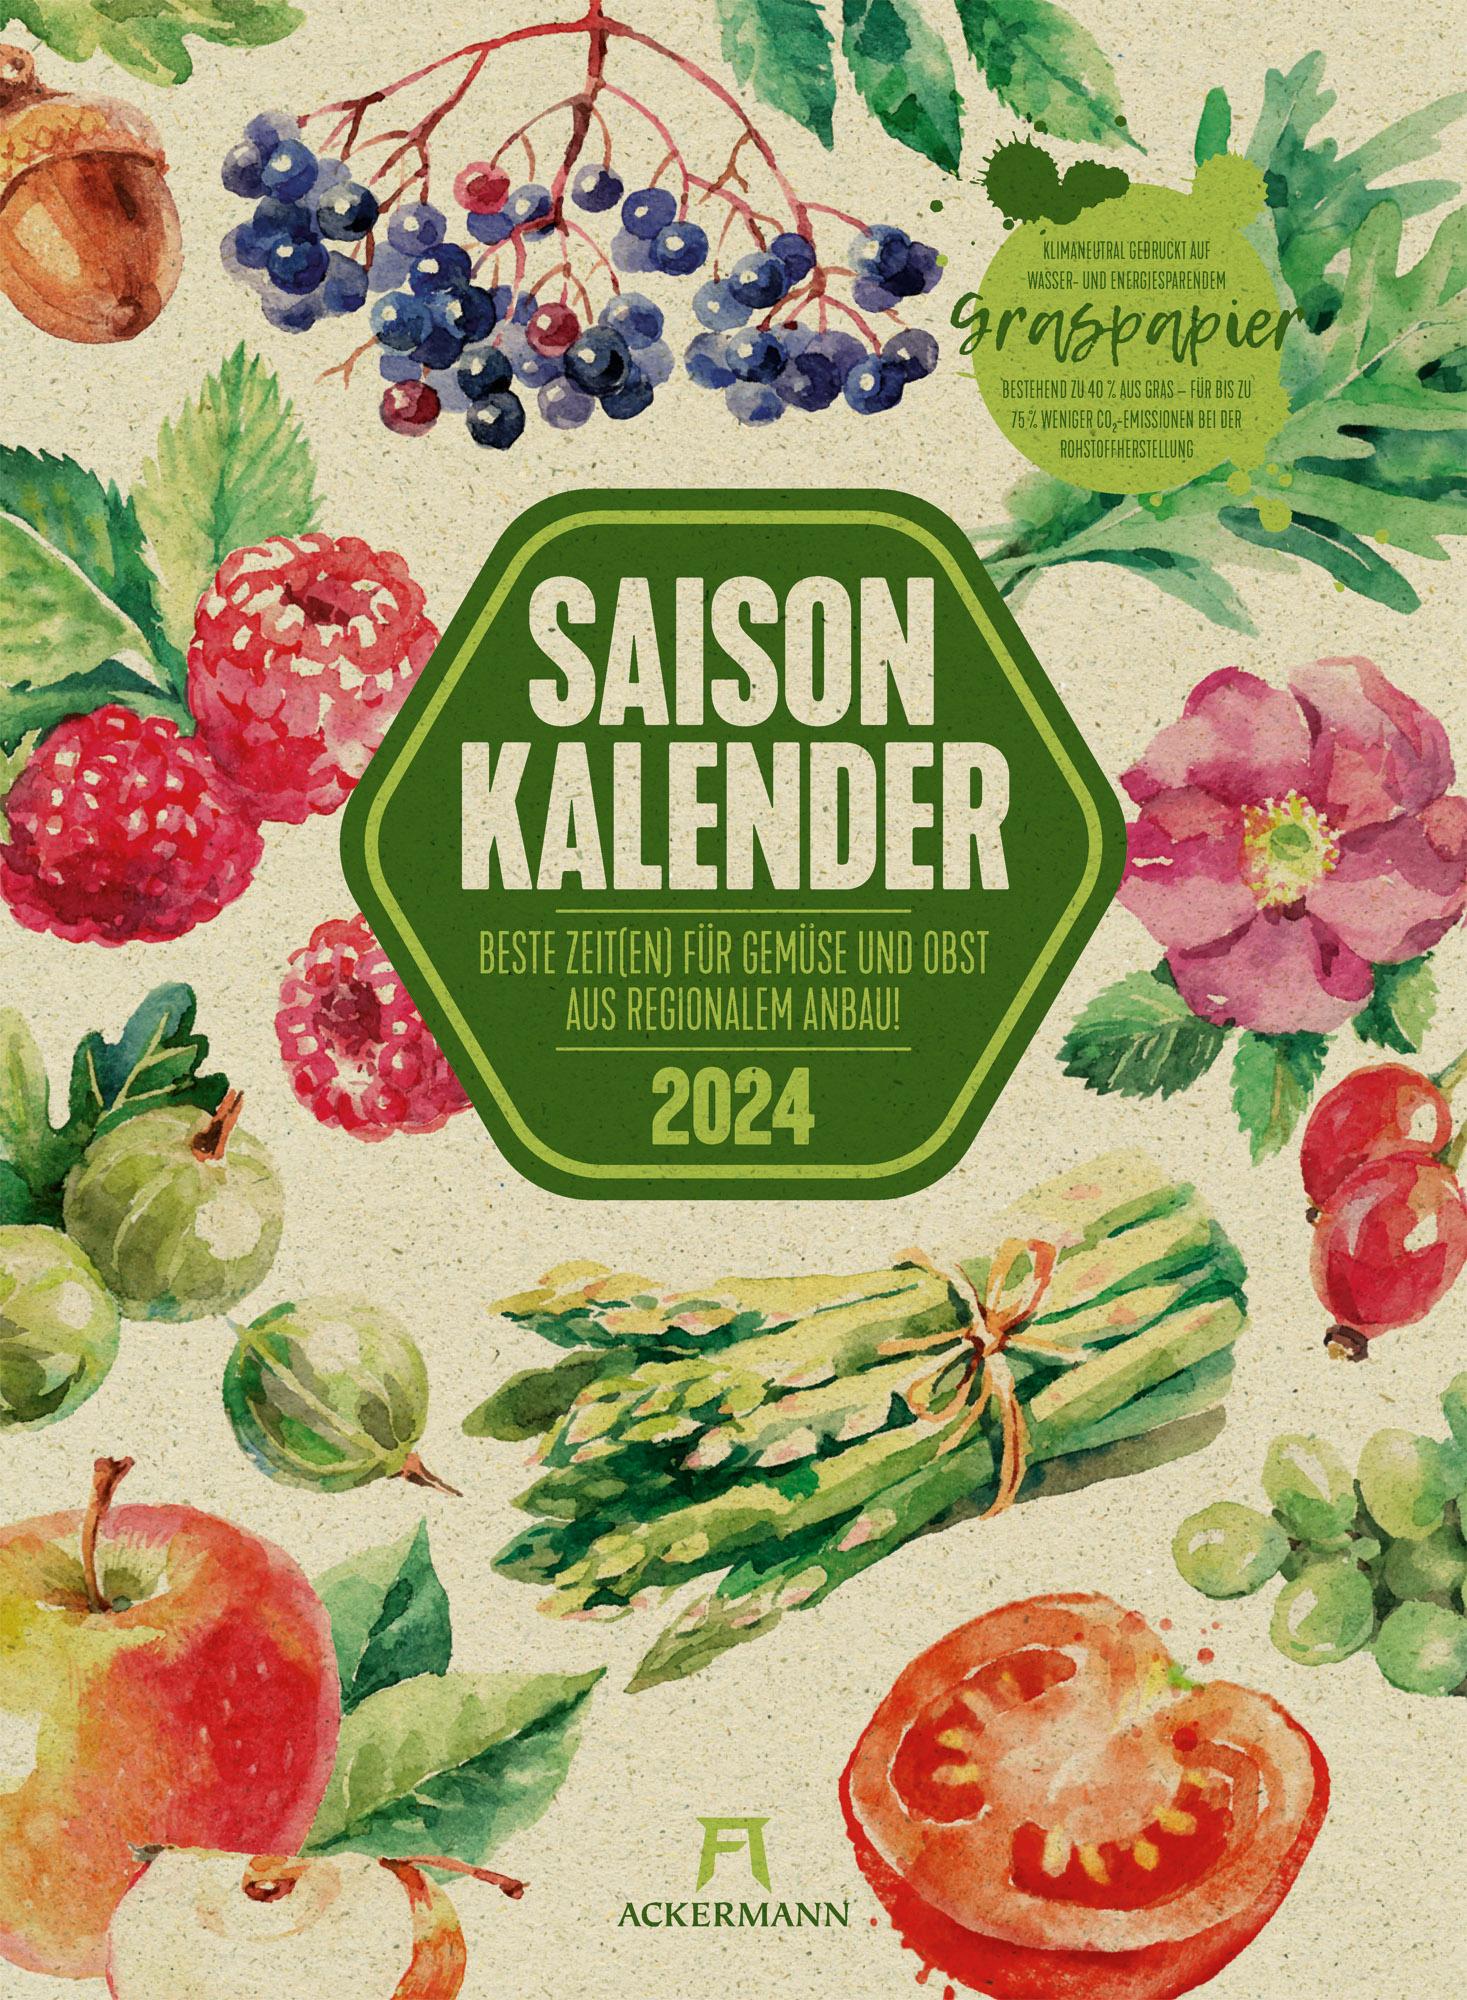 Saisonkalender - Obst & Gemüse - Graspapier-Kalender 2024 Beste Zeiten für Gemüse und Obst aus regionalem Anbau, Maße (B/H): 33 x 45 cm, Wandkalender aus Graspapier